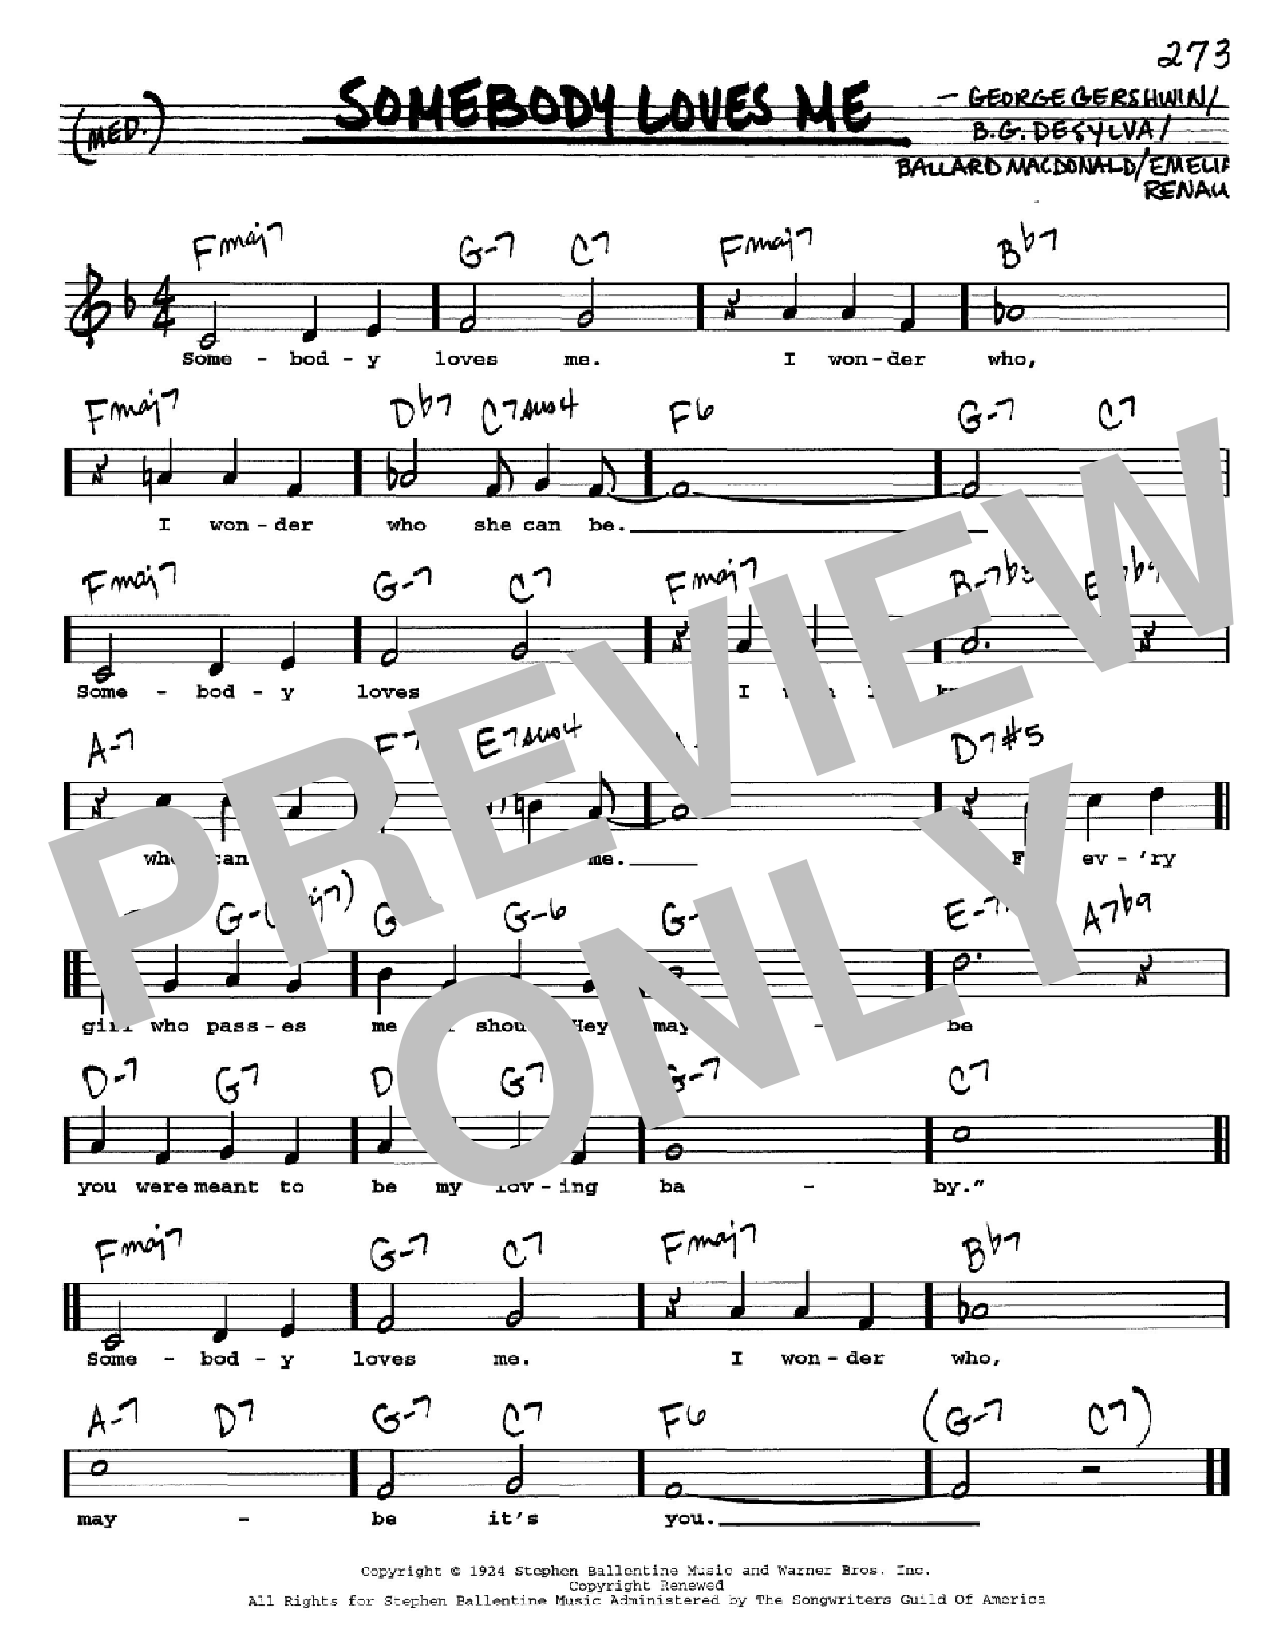 Download George Gershwin Somebody Loves Me Sheet Music